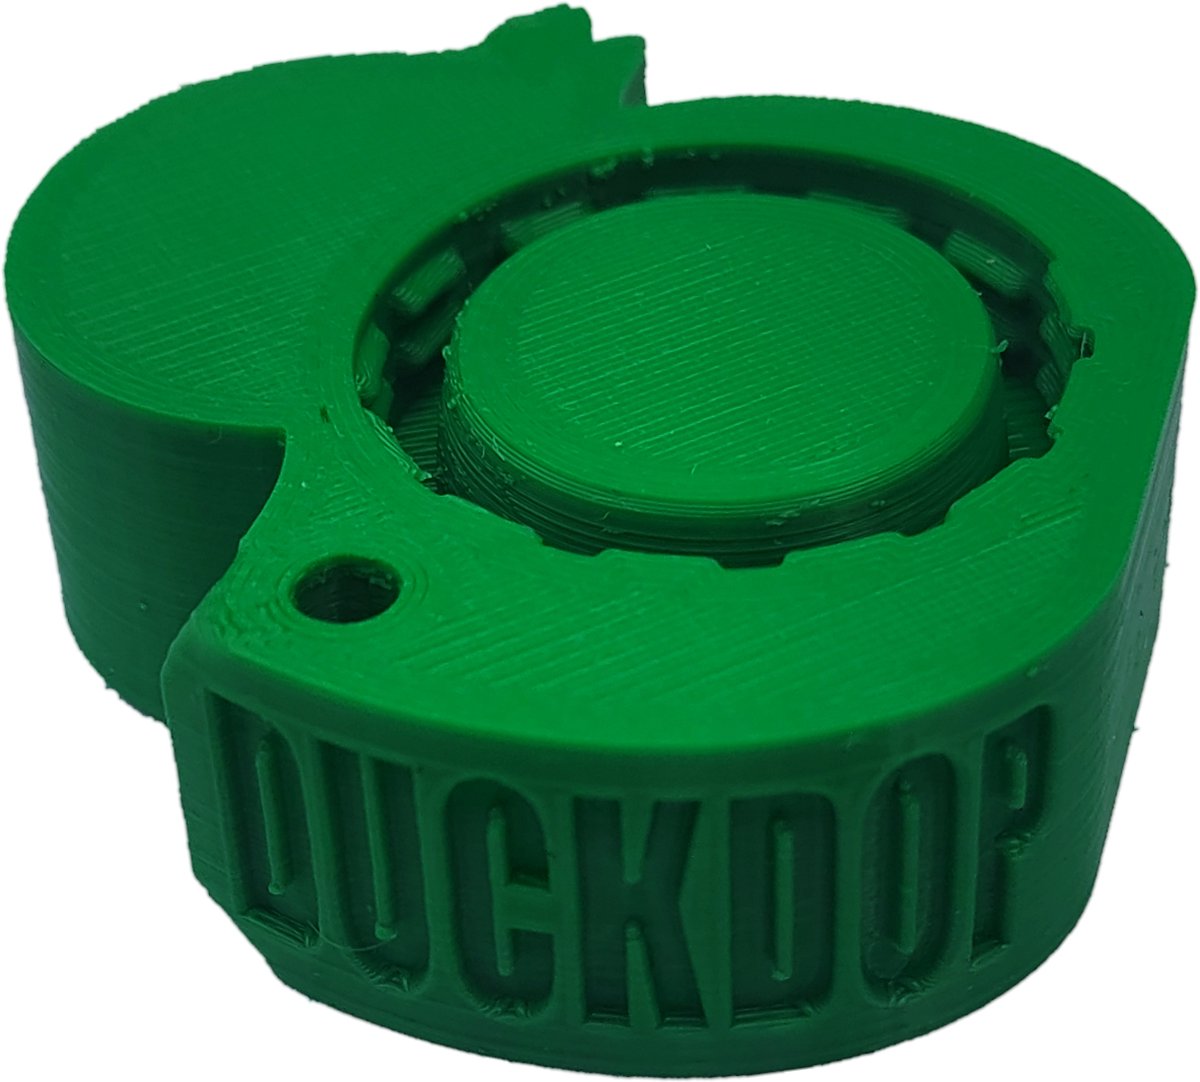 DuckDop® Limited Edition - Groen - Festival dop - Universele Flessendop - Inclusief grote sleutelhanger - Sta nooit meer in je eendje